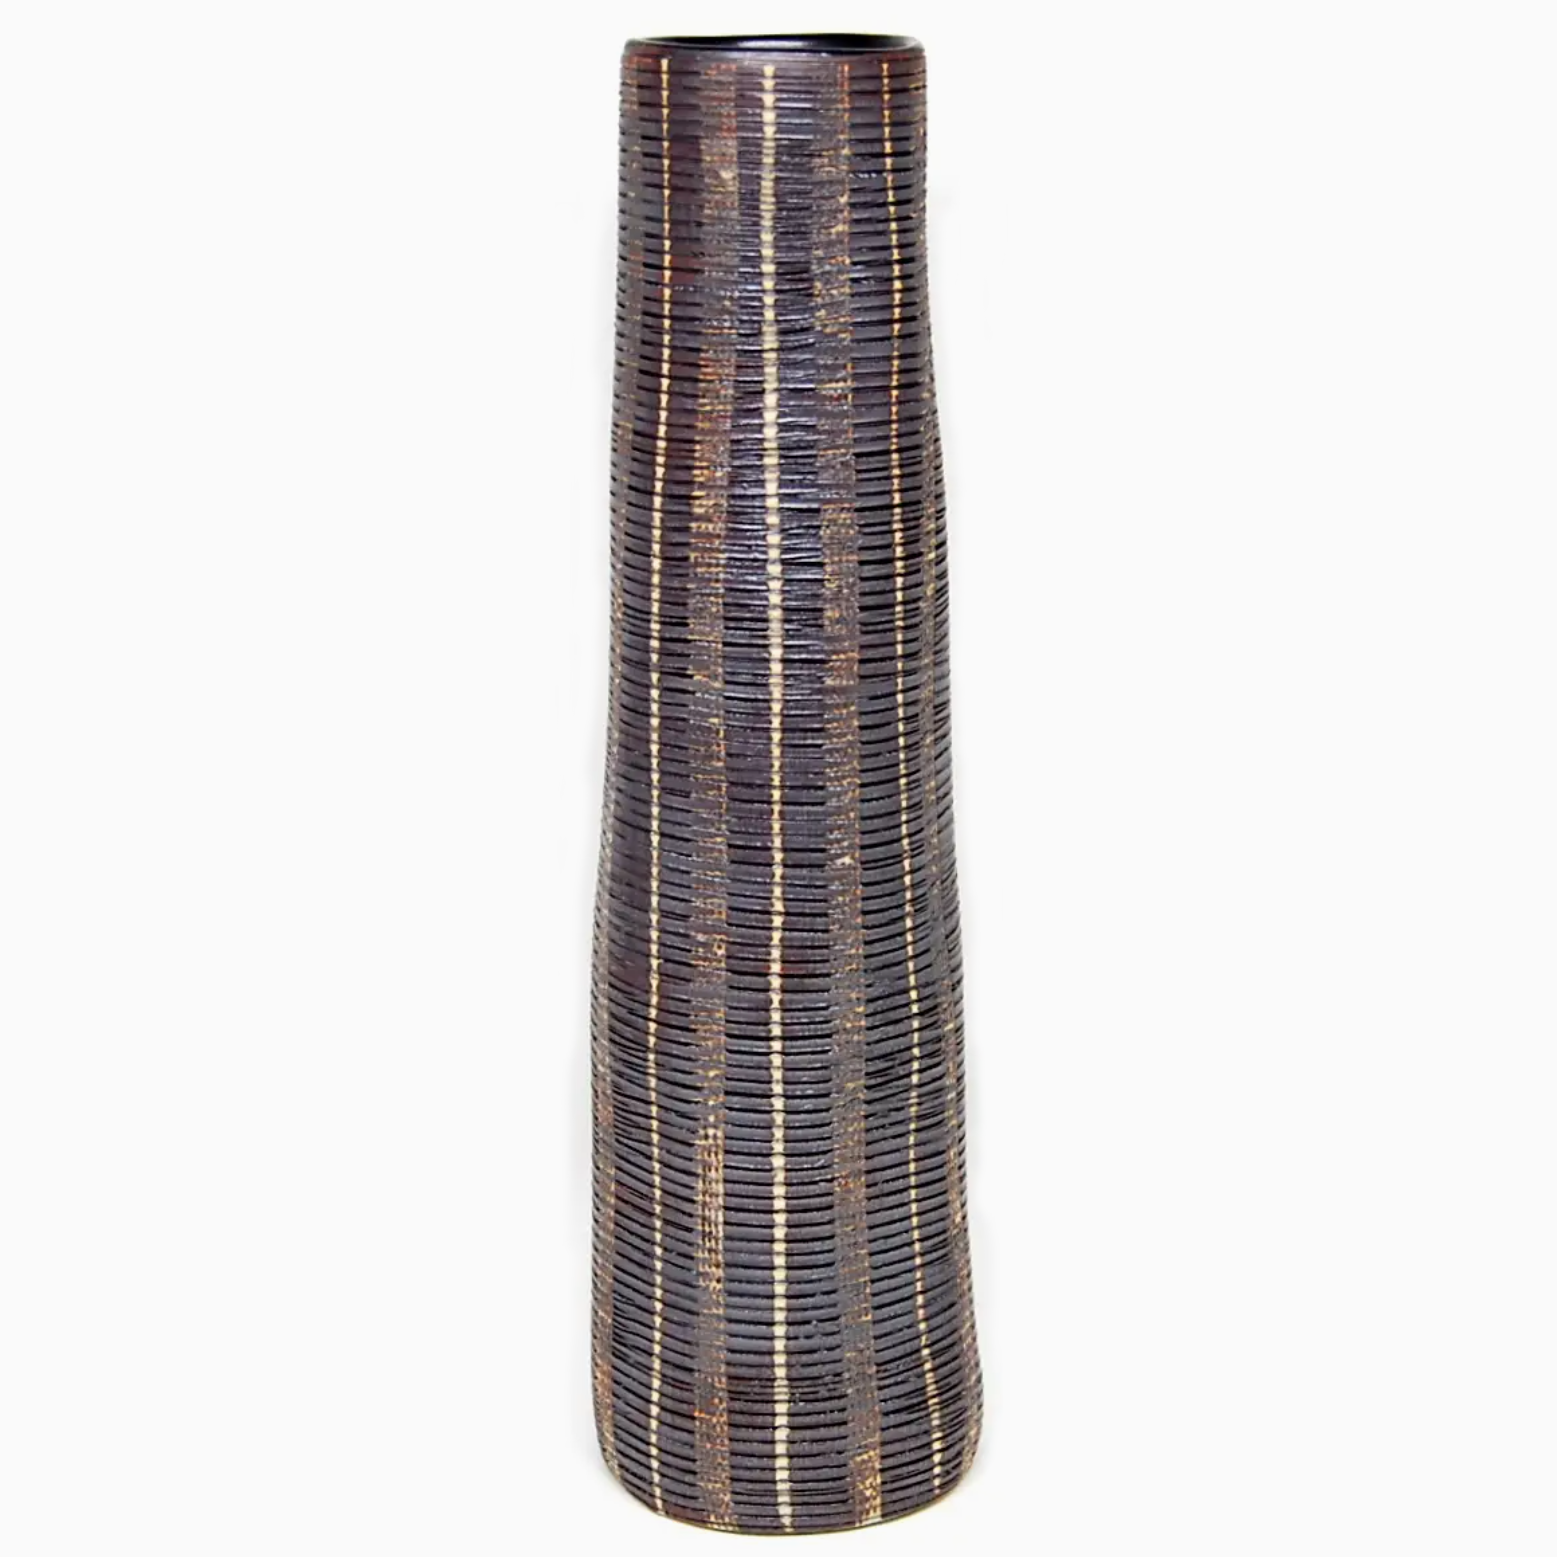 Handmade Long Coral Bud Vase, Brown